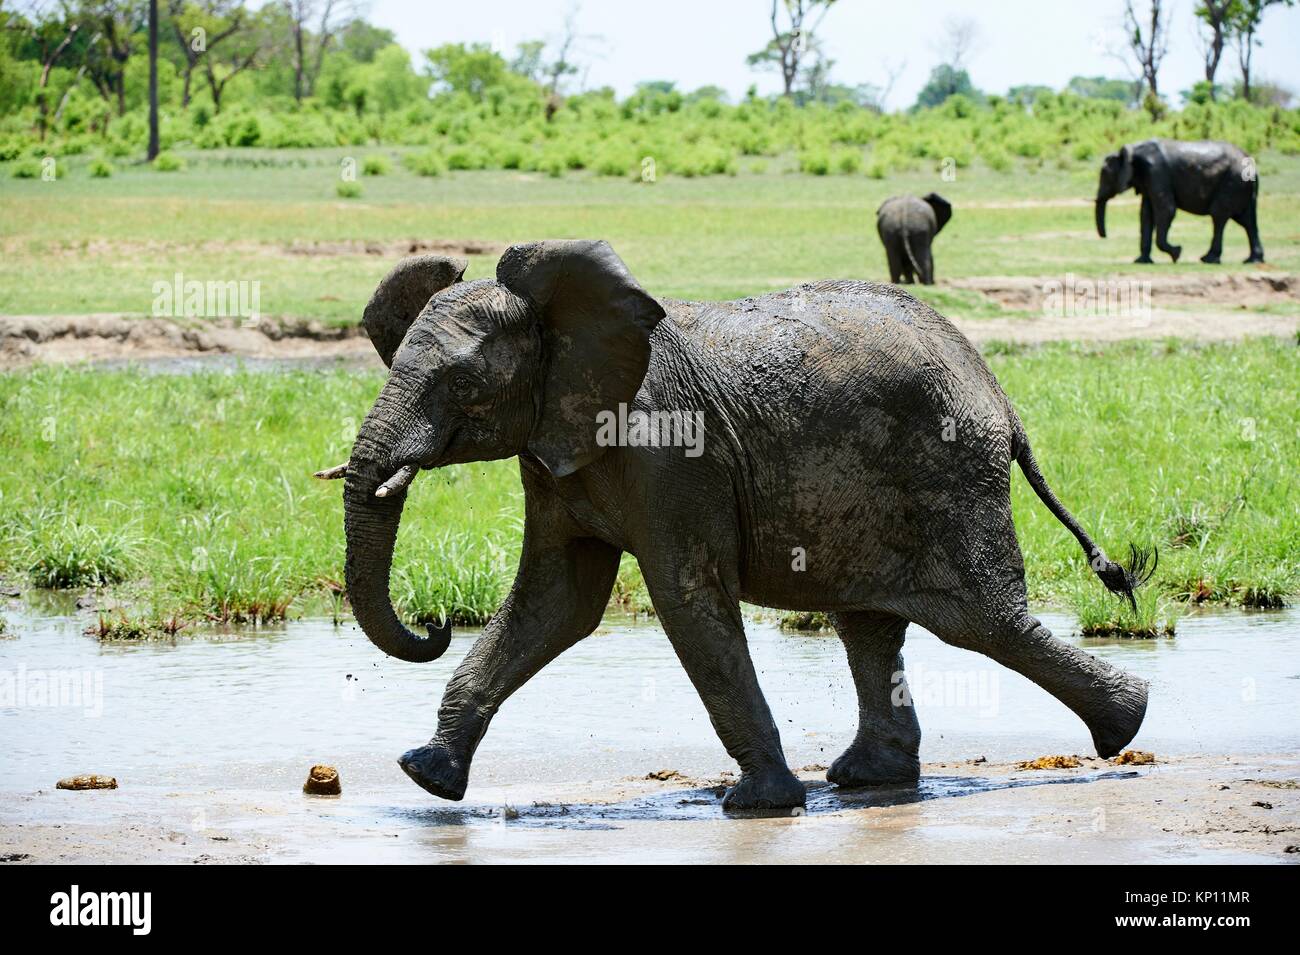 Young African elephant (Loxodonta africana) autour de trou d'eau. Le parc national de Hwange, Zimbabwe. Banque D'Images